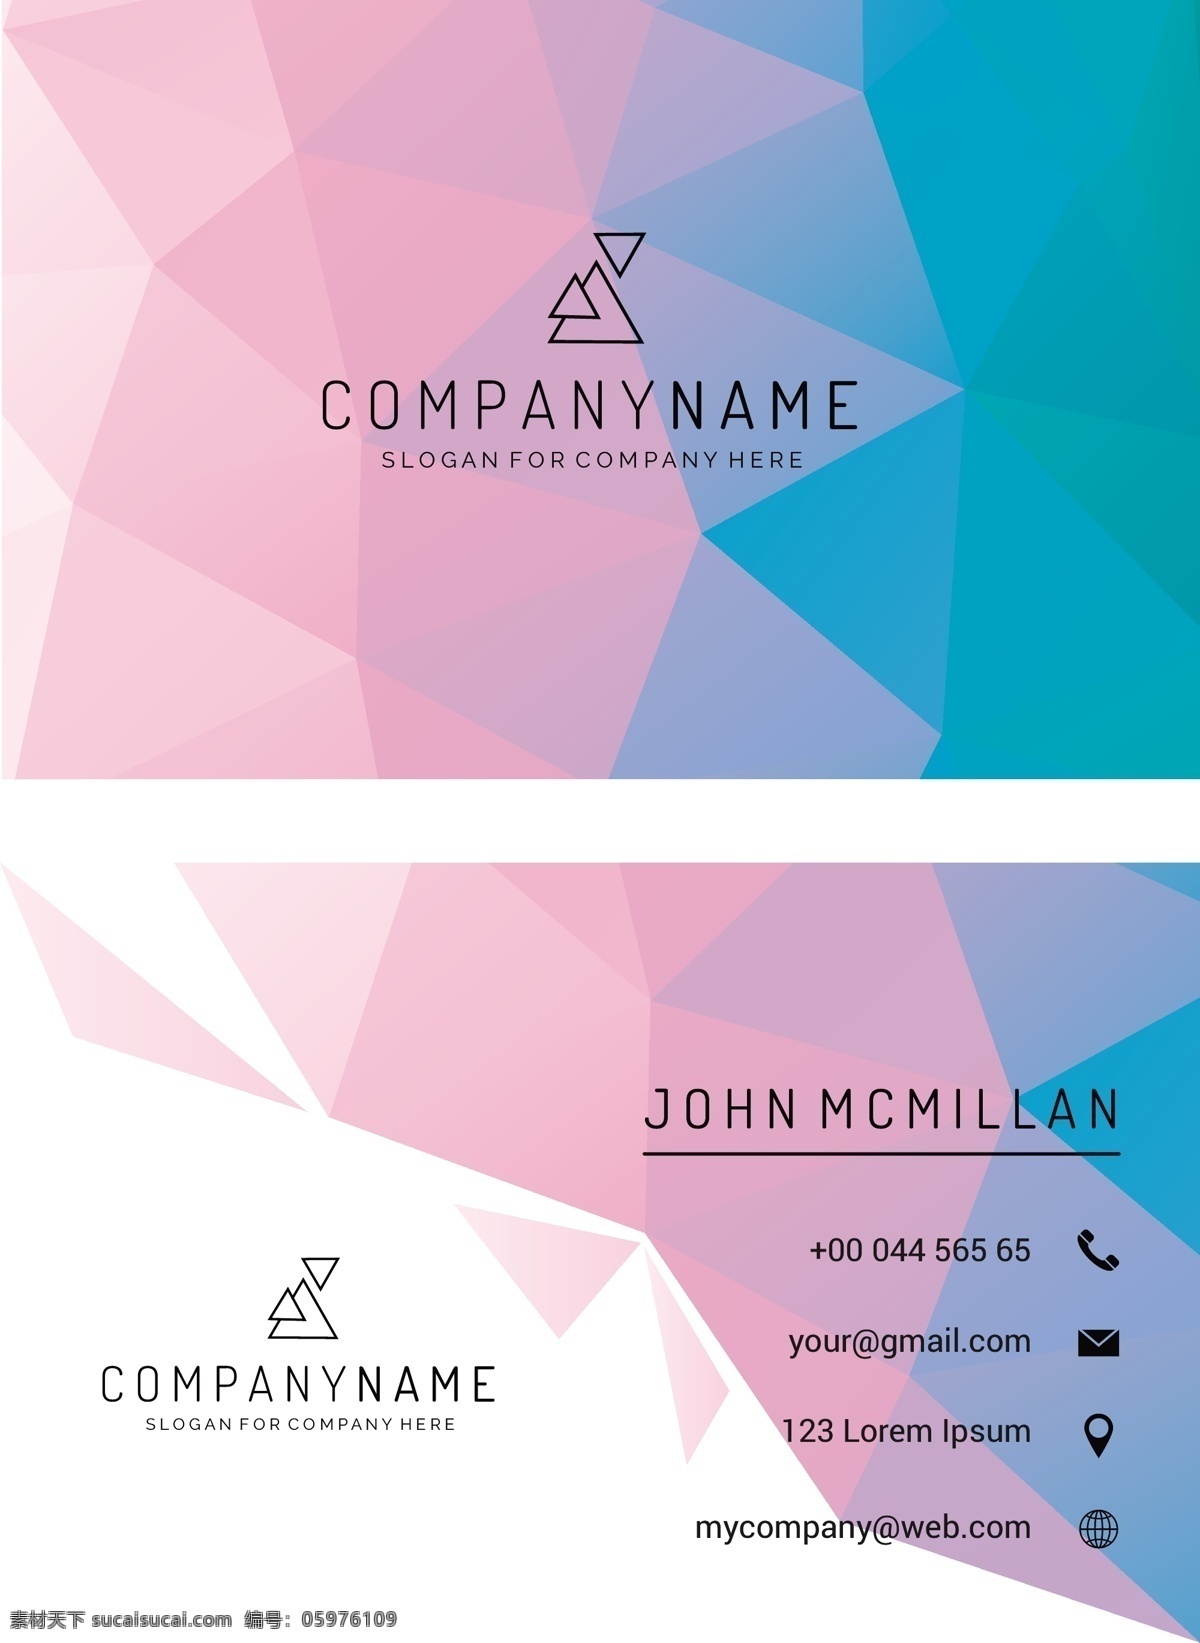 低聚合名片 商标 名片 商务 抽象 卡片 模板 几何 办公室 展示 文具 公司 抽象标志 企业标识 品牌 现代 印刷 身份